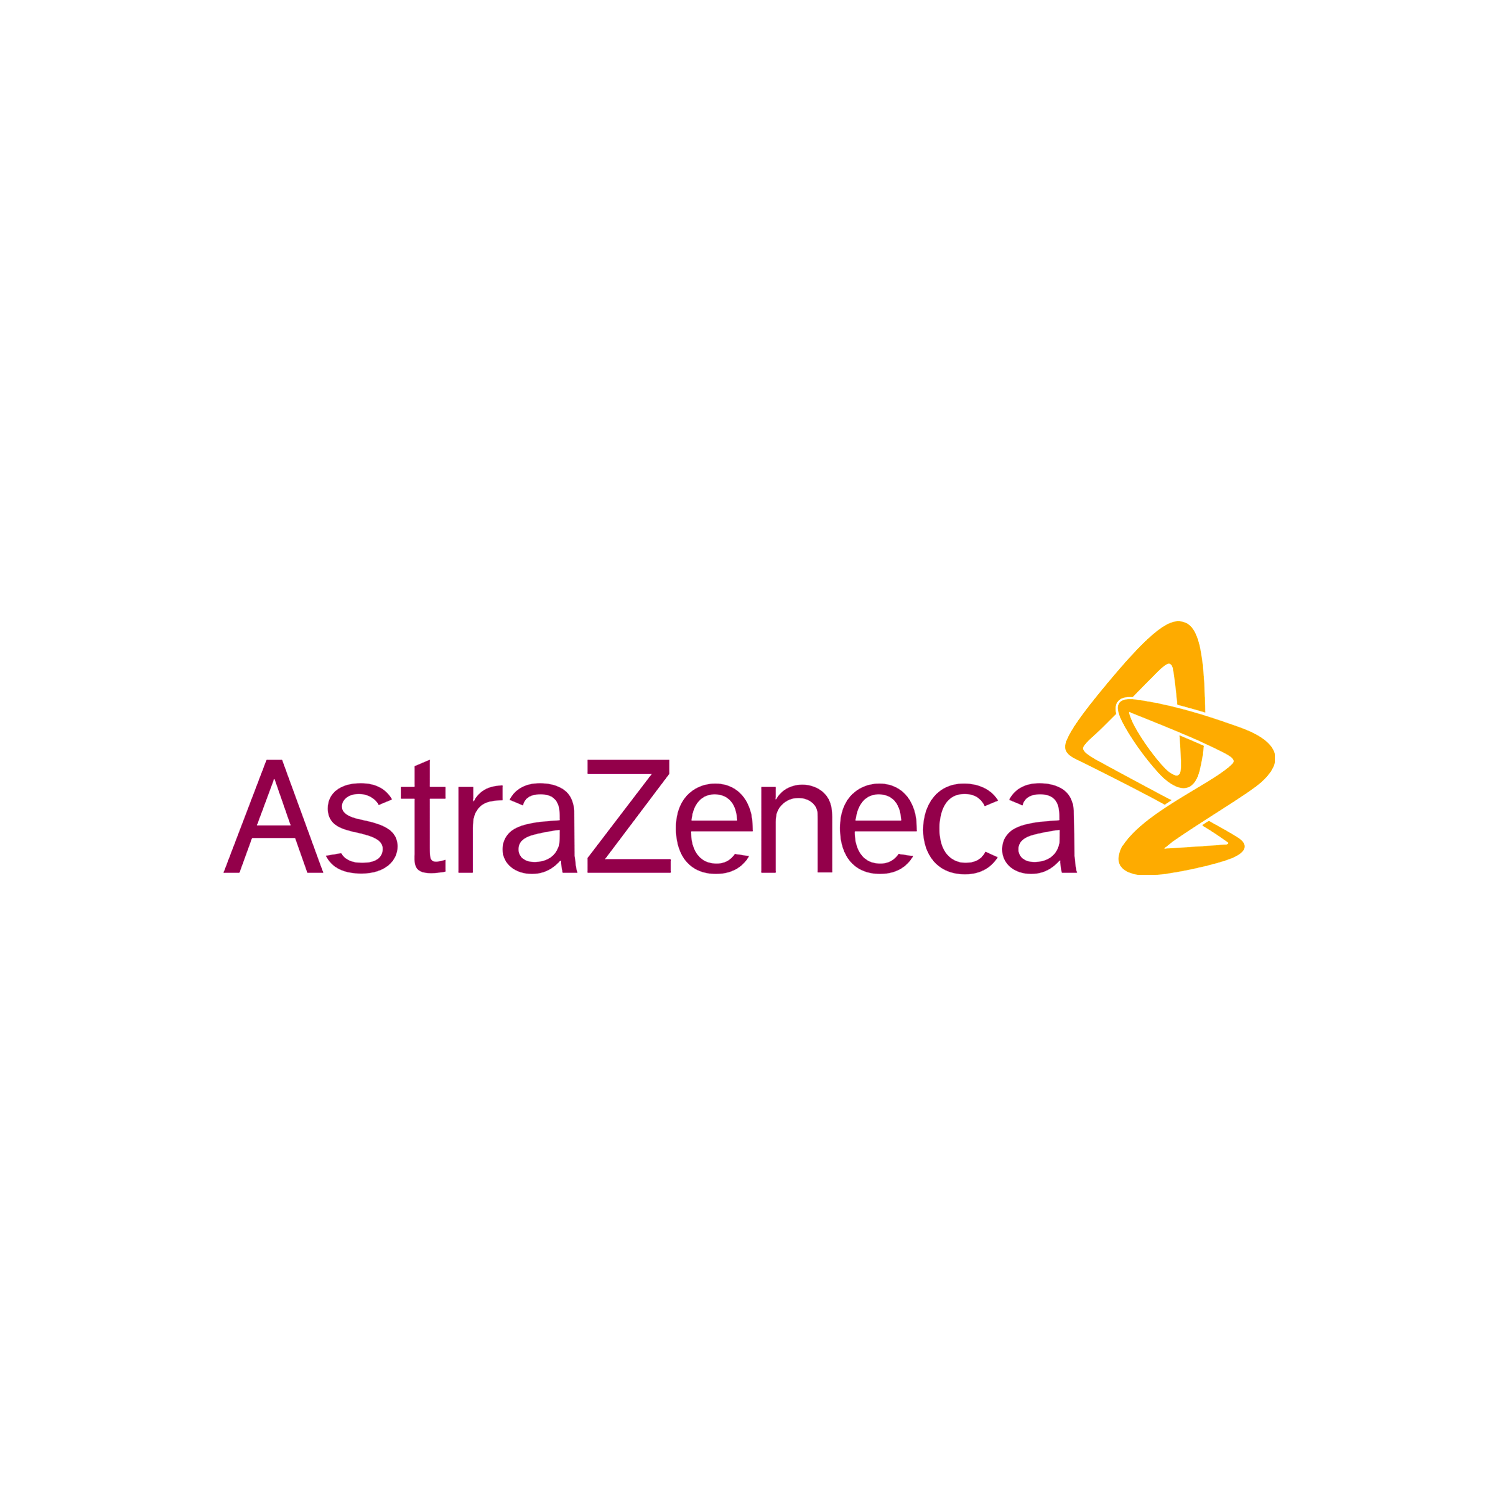 AstraZeneca-2020